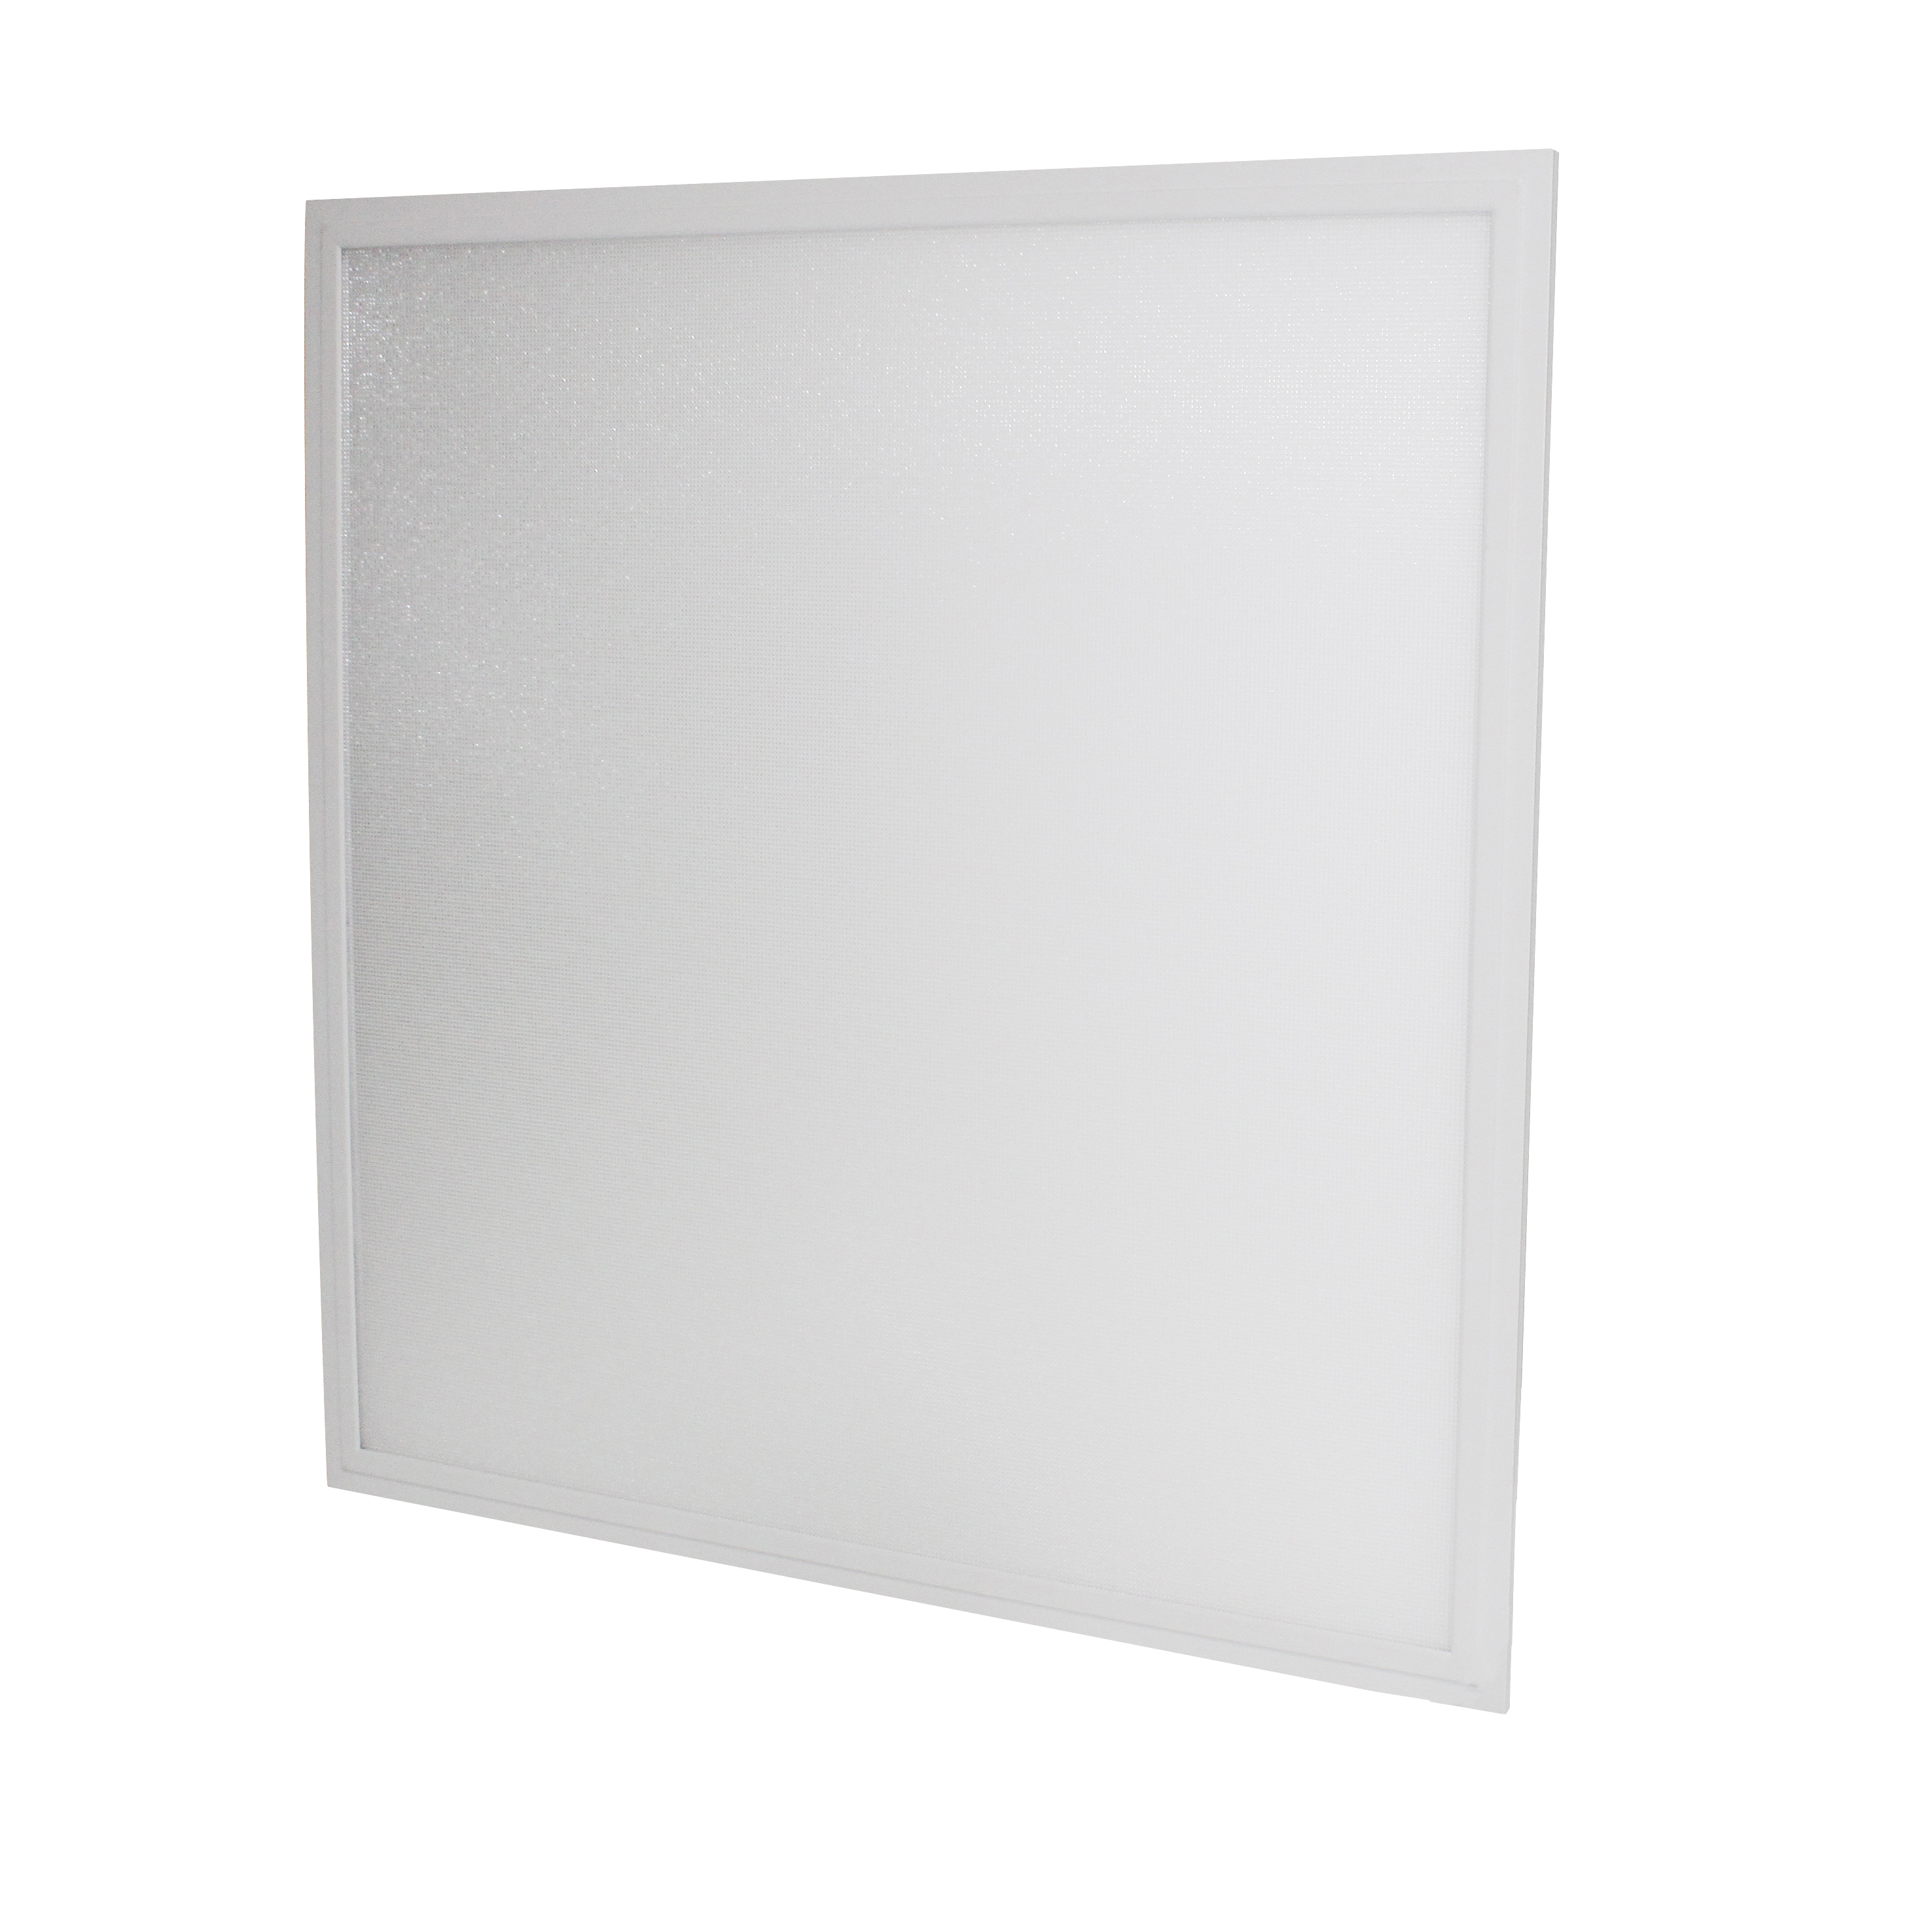 LED-Panel Multi Pro 4, 15-50 W, weiß 840, 620x620mm, 130 lm/W, geeignet für Bildschirmarbeitsplätze